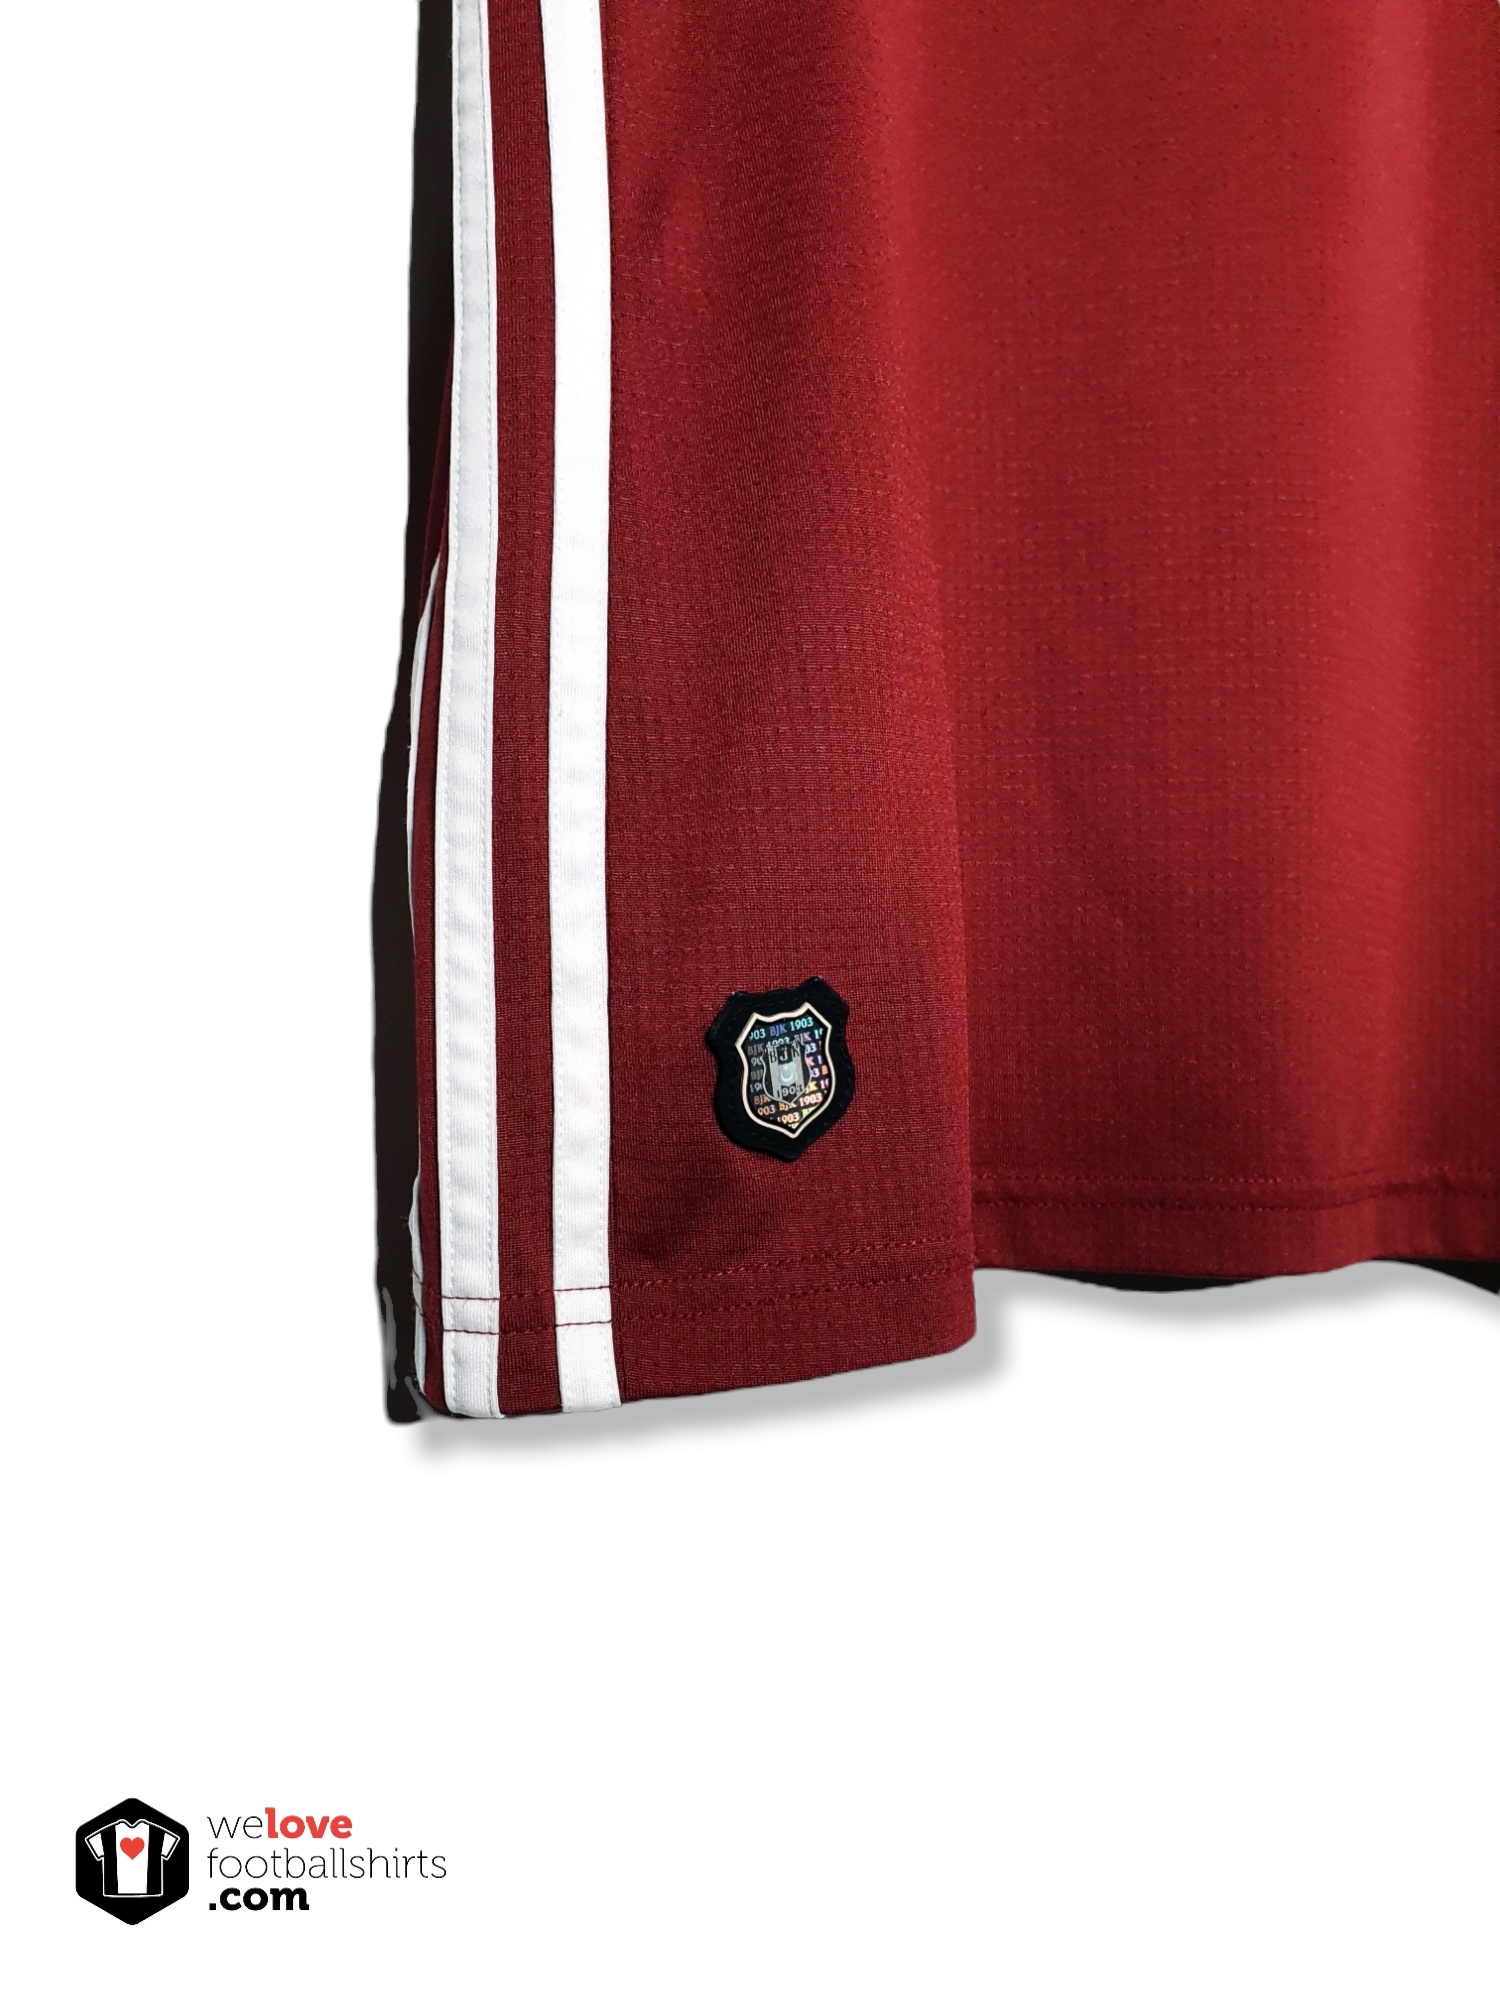 Camisas do Besiktas 2016-2017 Adidas » Mantos do Futebol